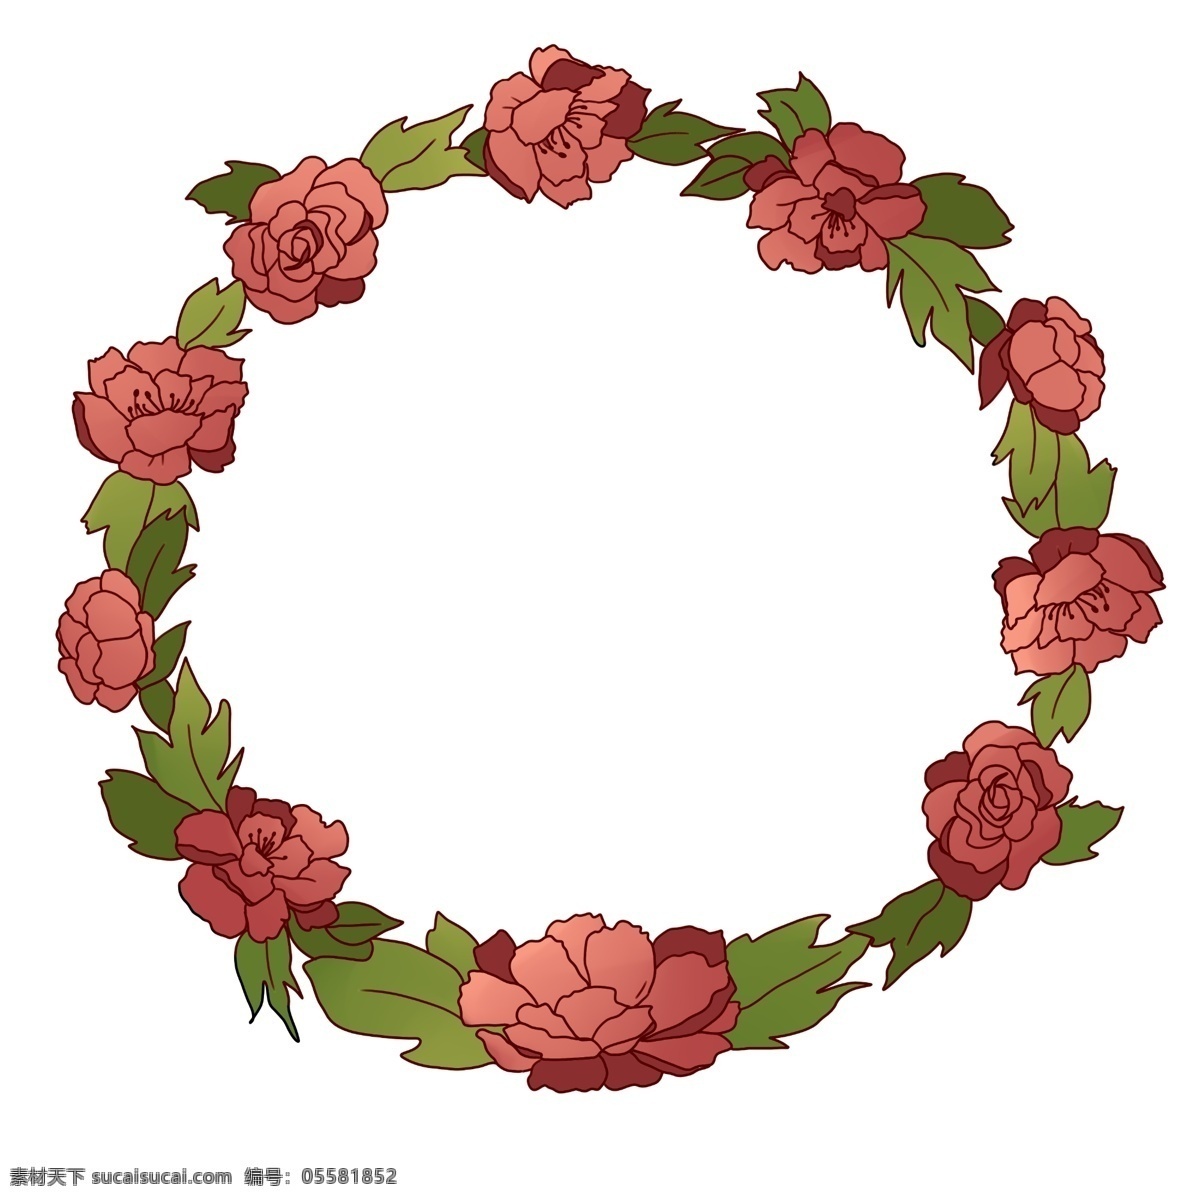 牡丹 花环 边框 插画 牡丹花环 圆形花环 漂亮的花环 植物花环 花环装饰 花环插画 立体的花环